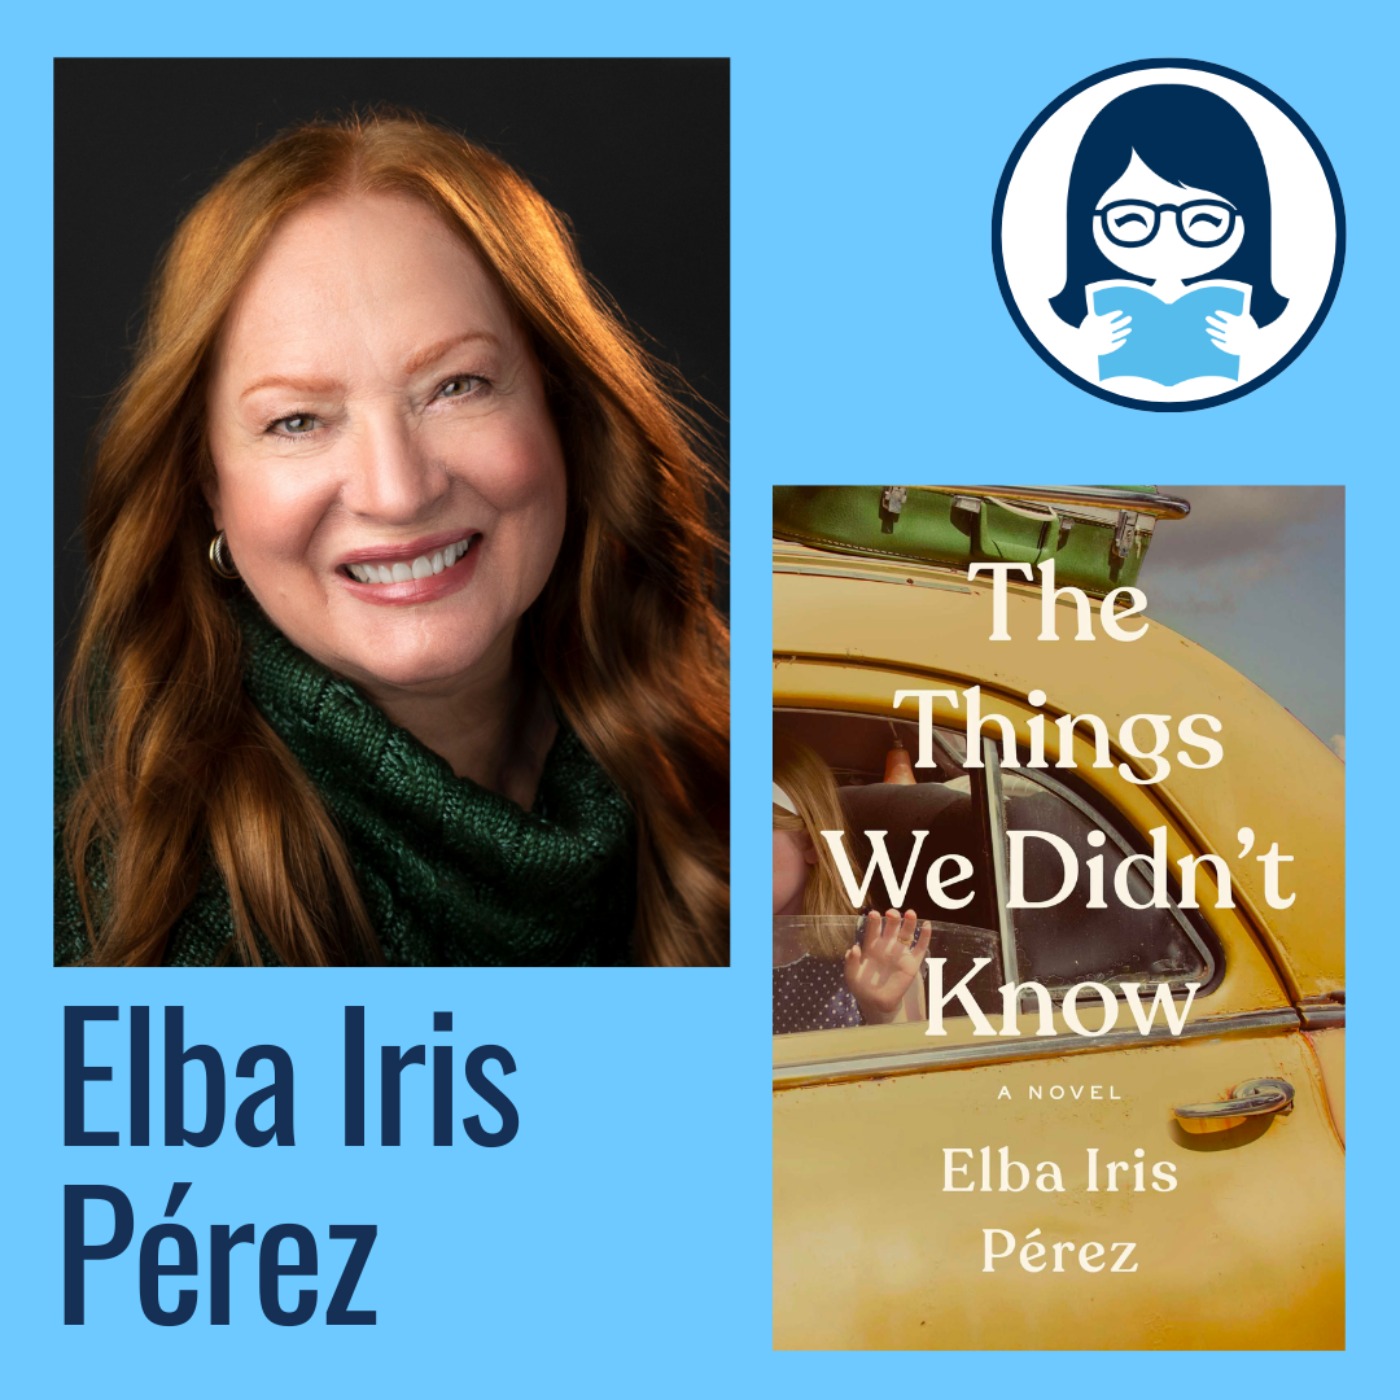 Elba Iris Pérez, THE THINGS WE DIDN'T KNOW